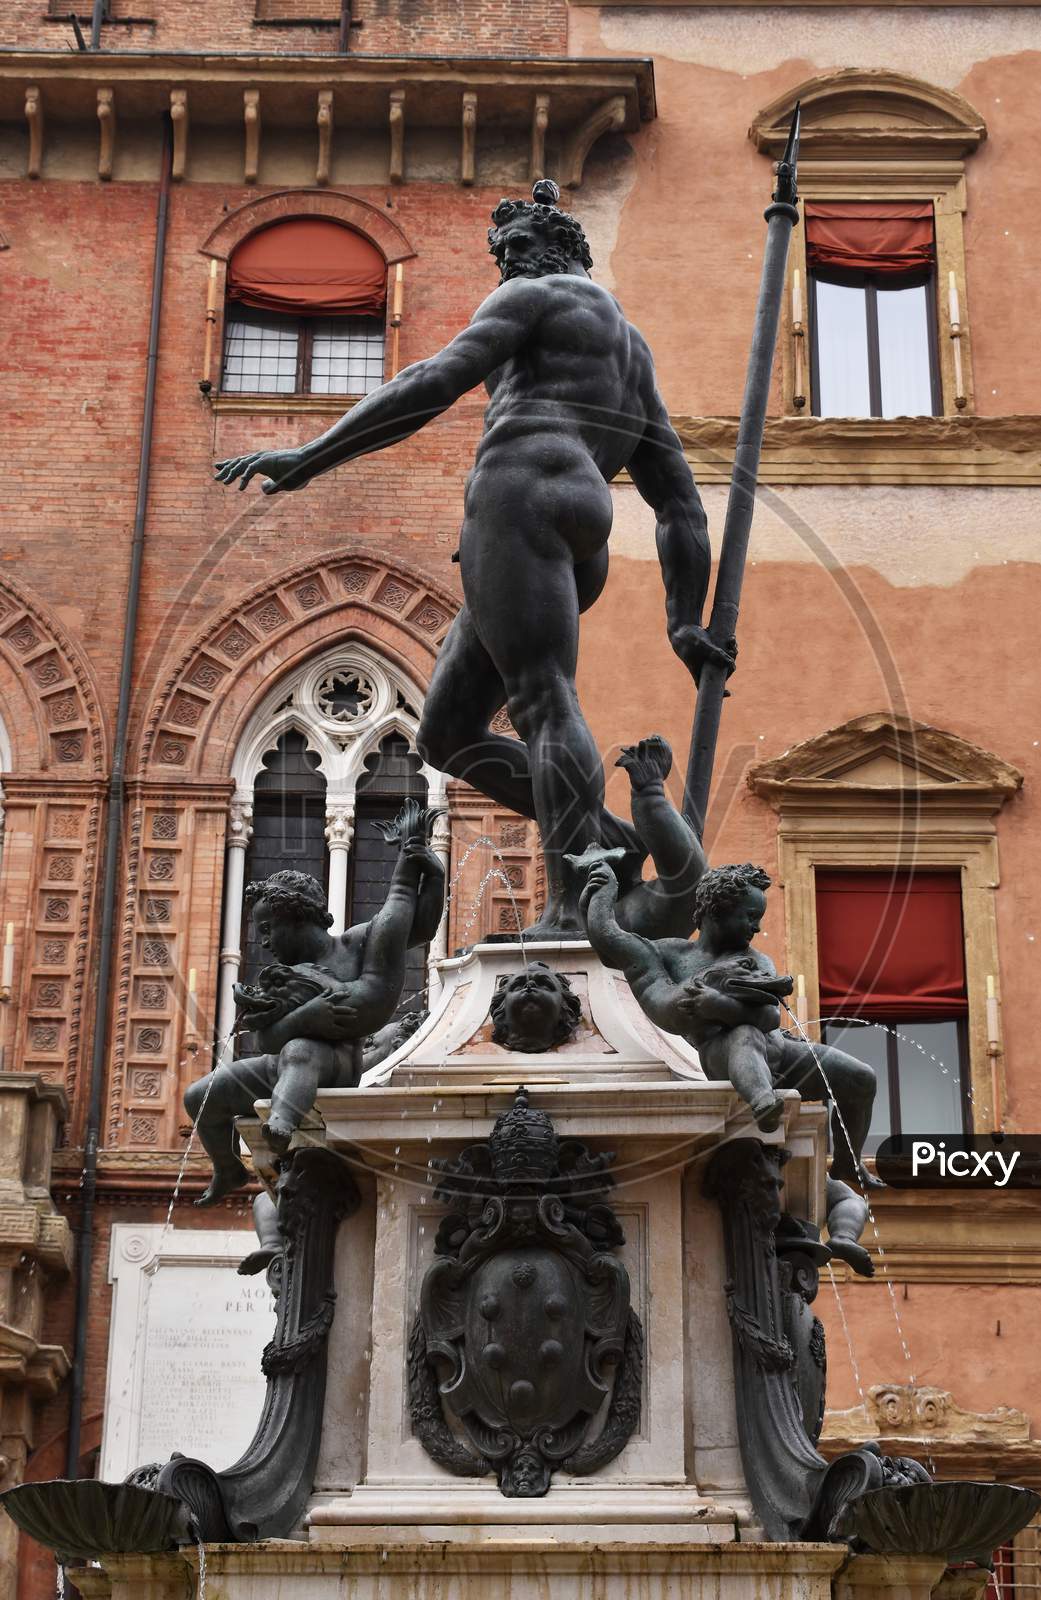 The fountain of Neptune located near Piazza Maggiore in Bologna. Italy.